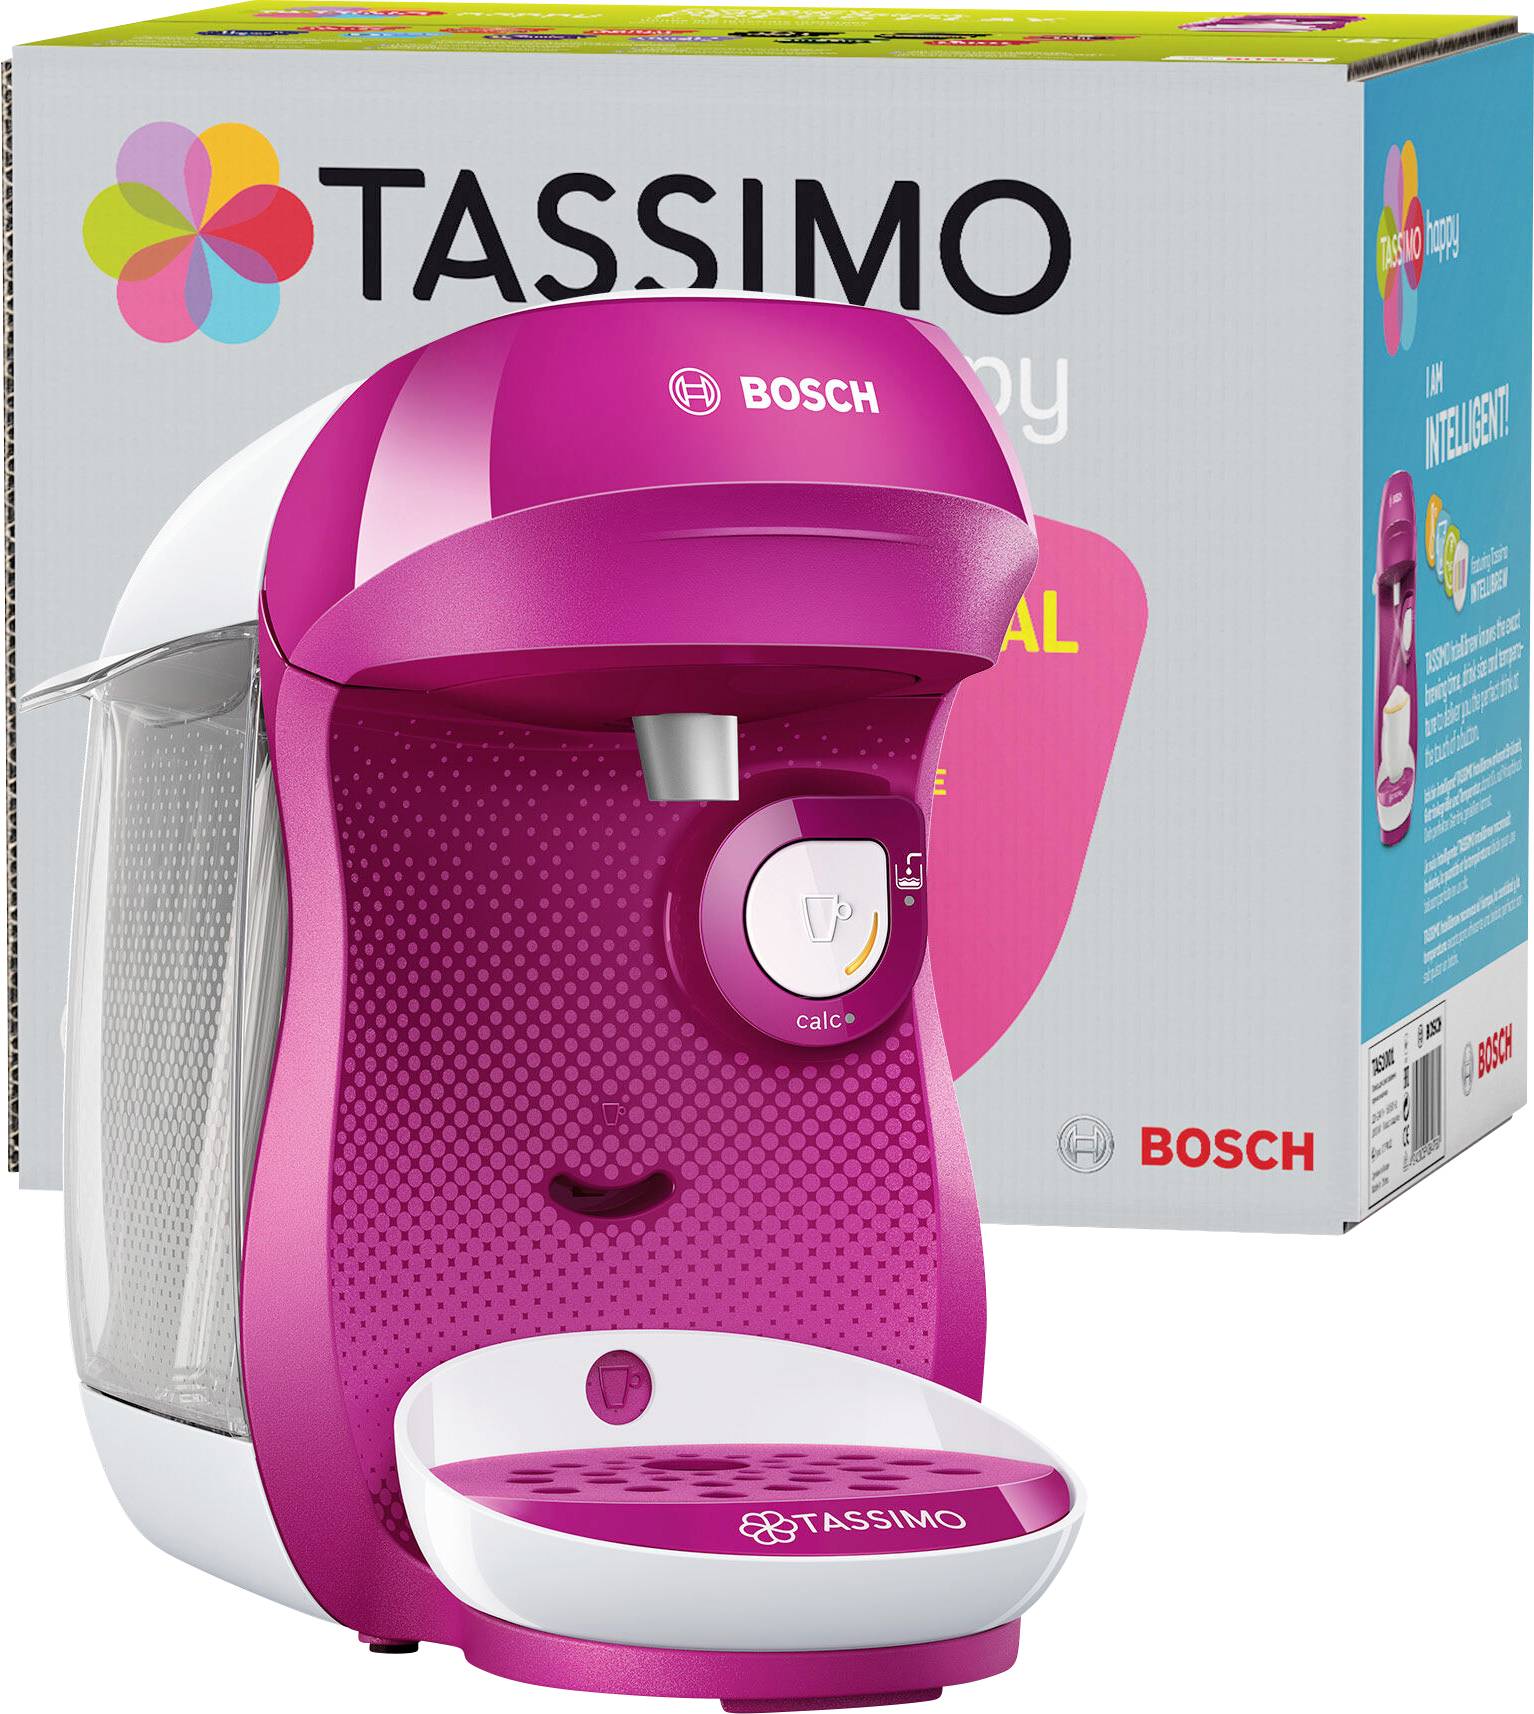 Capsule à café réutilisable pour machines BOSCH™️ Tassimo